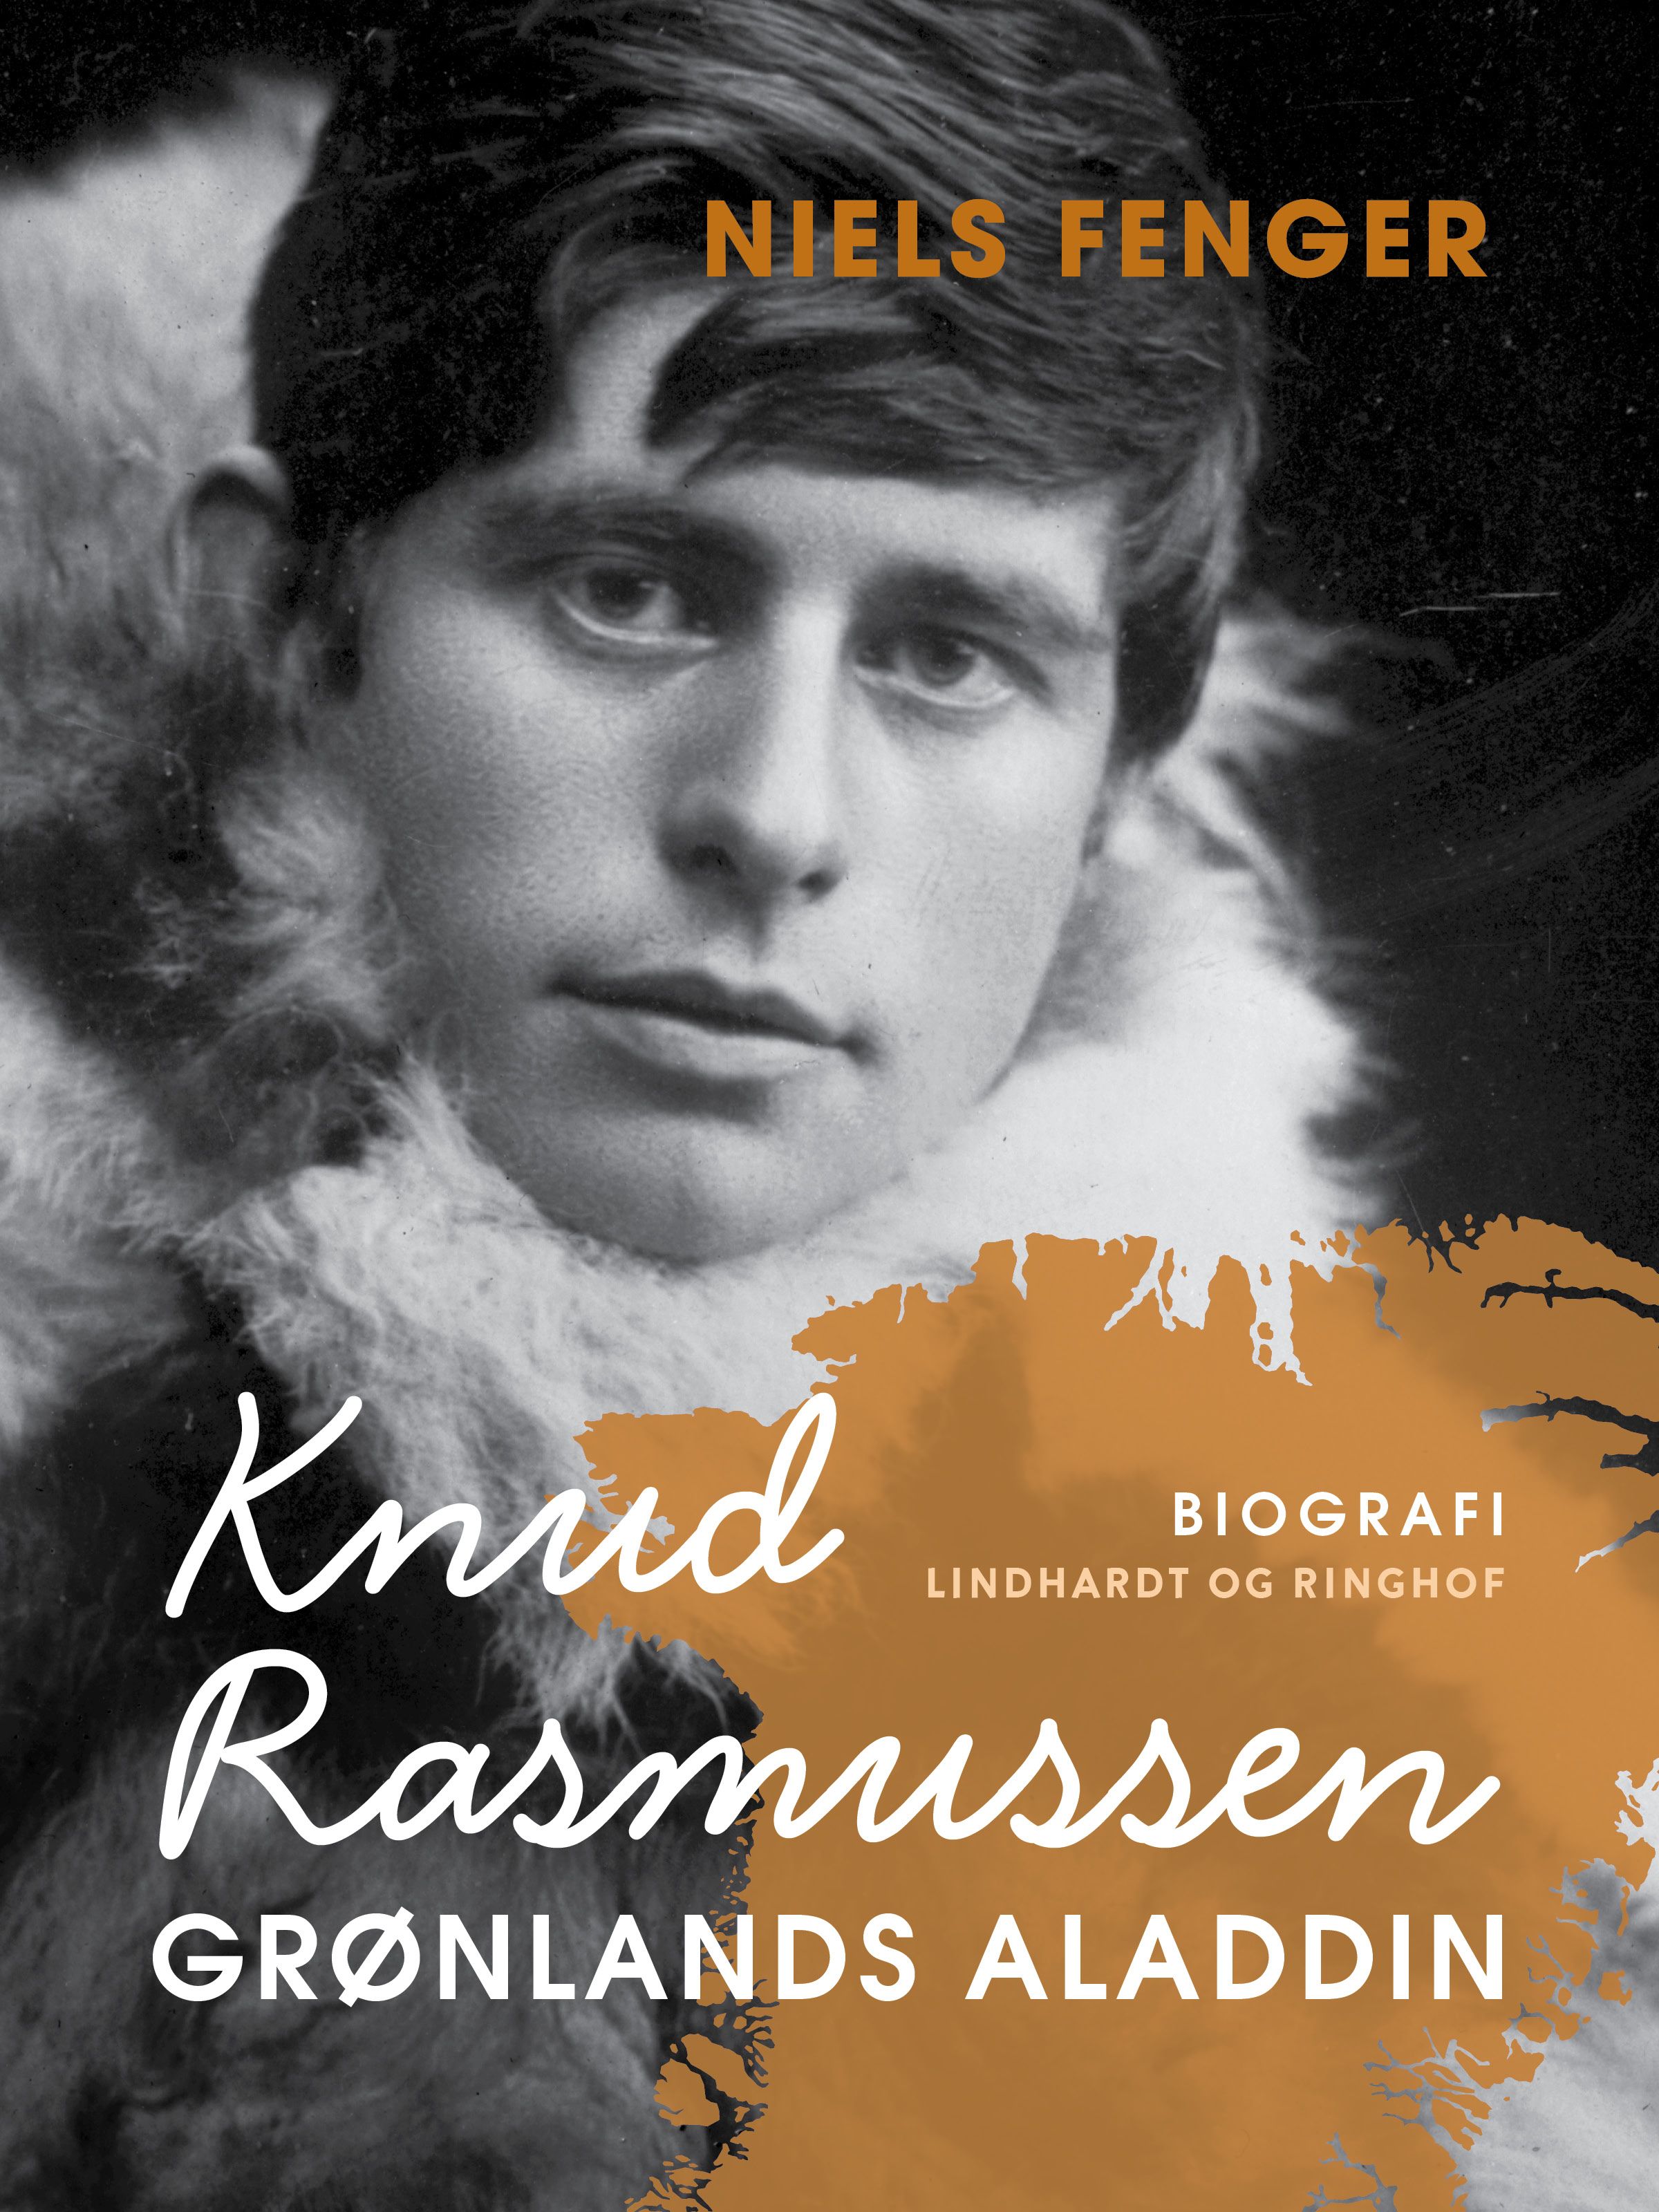 Knud Rasmussen. Grønlands Aladdin, e-bog af Niels Fenger